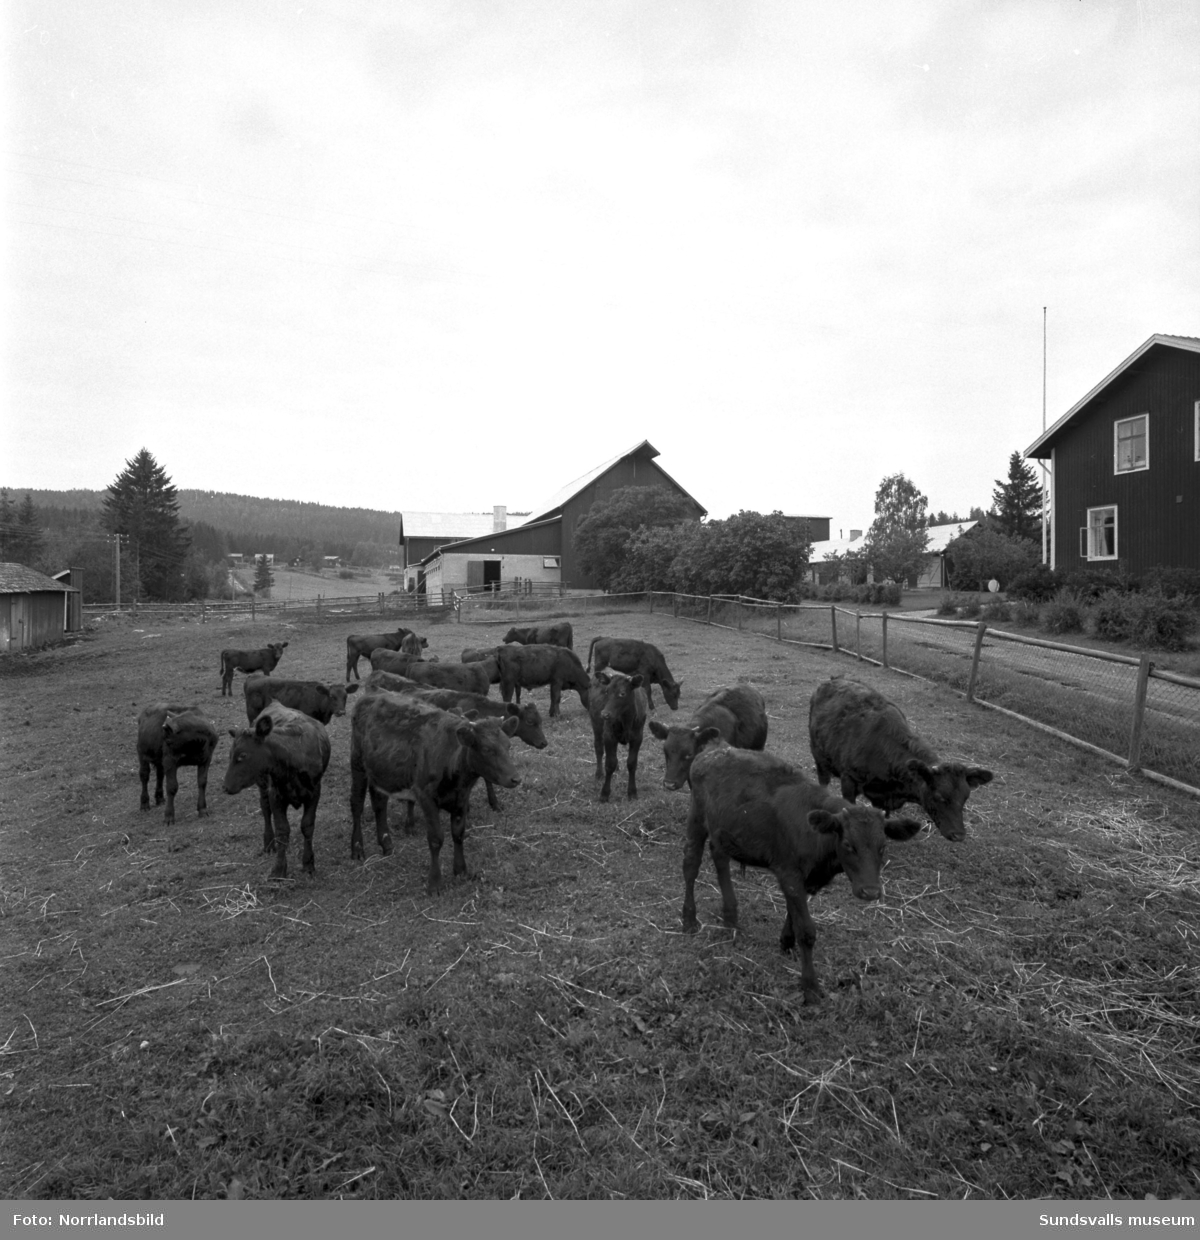 Rådman Gustav Velanders storjordbruk i Brattås, Stöde. En ståtlig tjur visas upp med mangårdsbyggnaden i bakgrunden. Även kor, kalvar och översiktsbild över gården.